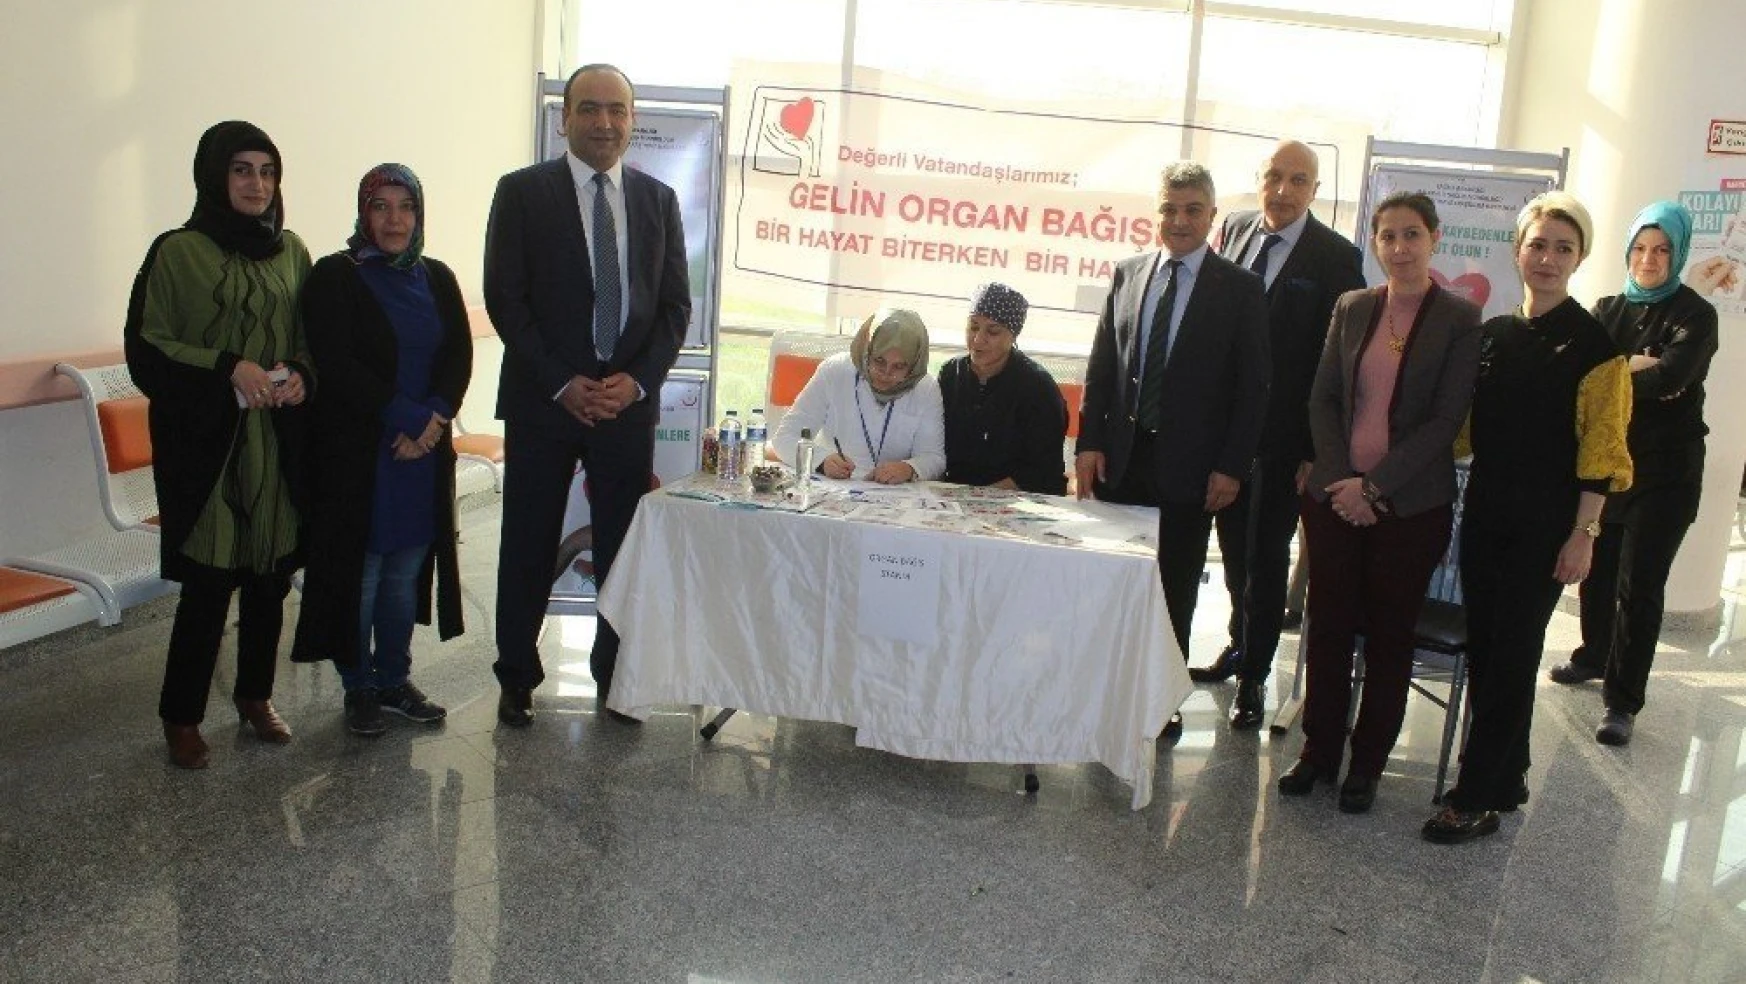 Malatya Eğitim ve Araştırma Hastanesi organ bağışı standı açtı
